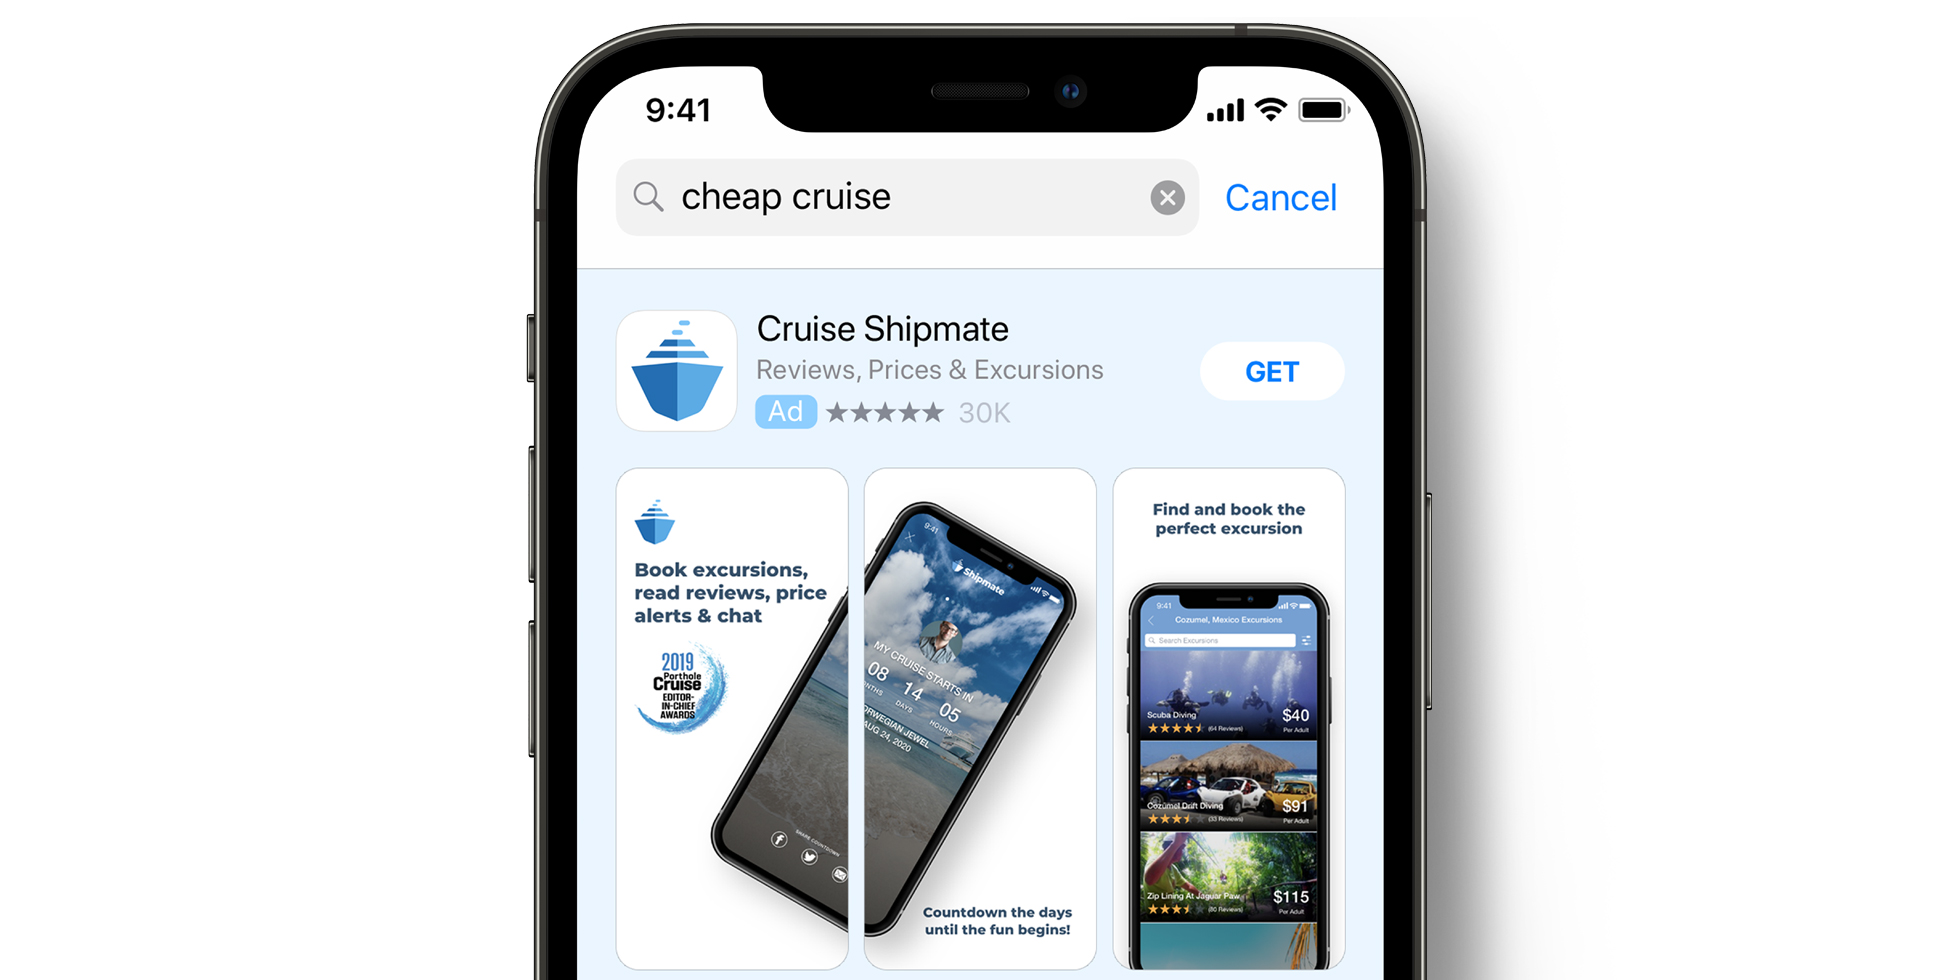 Publicité Apple Search Ads de Cruise Shipmate dans l’App Store